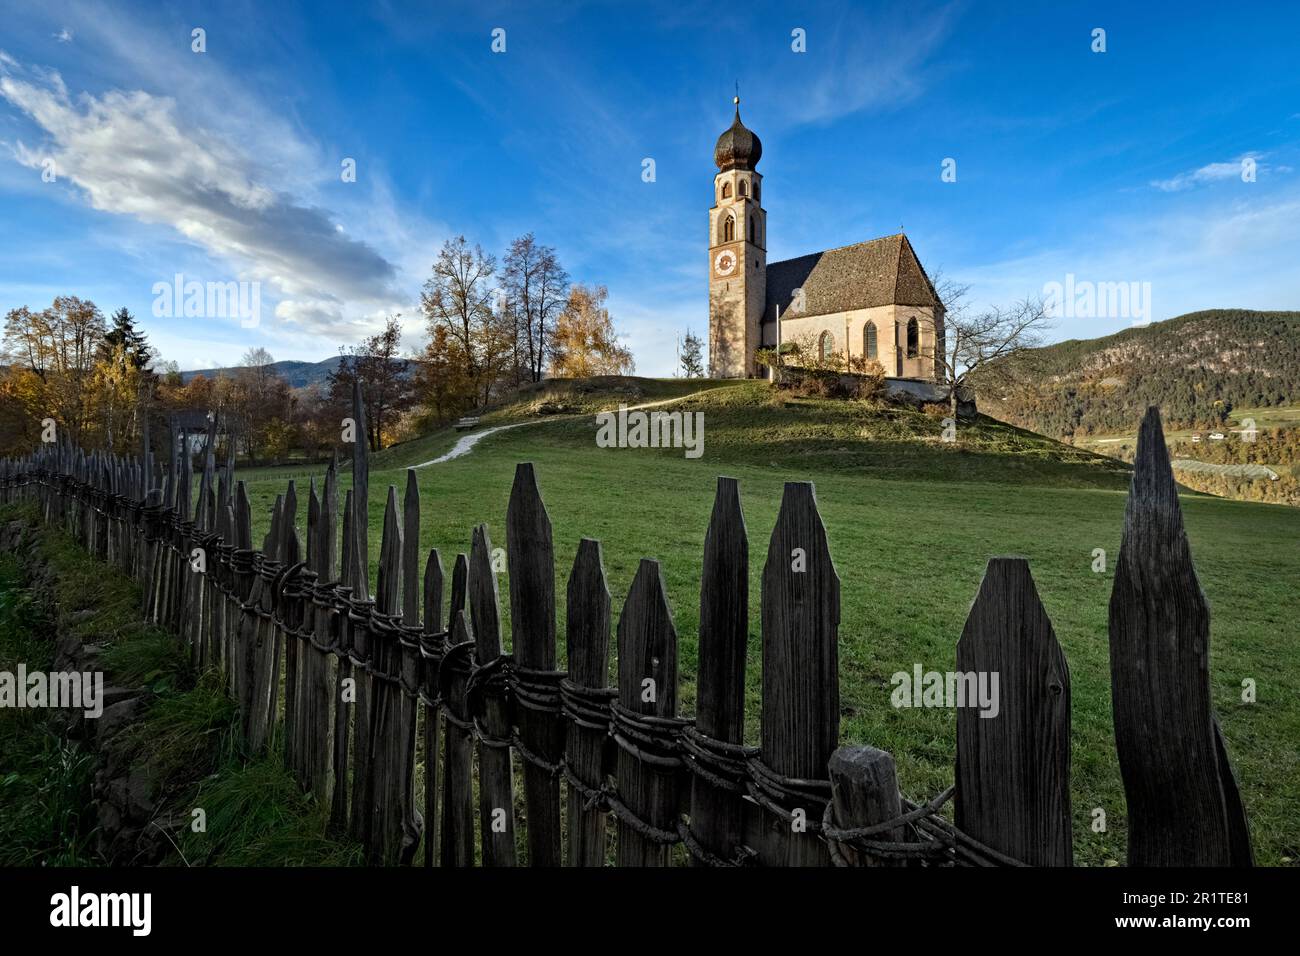 Die gotisch-romanische Kirche St. Konstantin (St. Konstantin). Fiè allo Sciliar (Völs am Schlern), Südtirol, Italien. Stockfoto